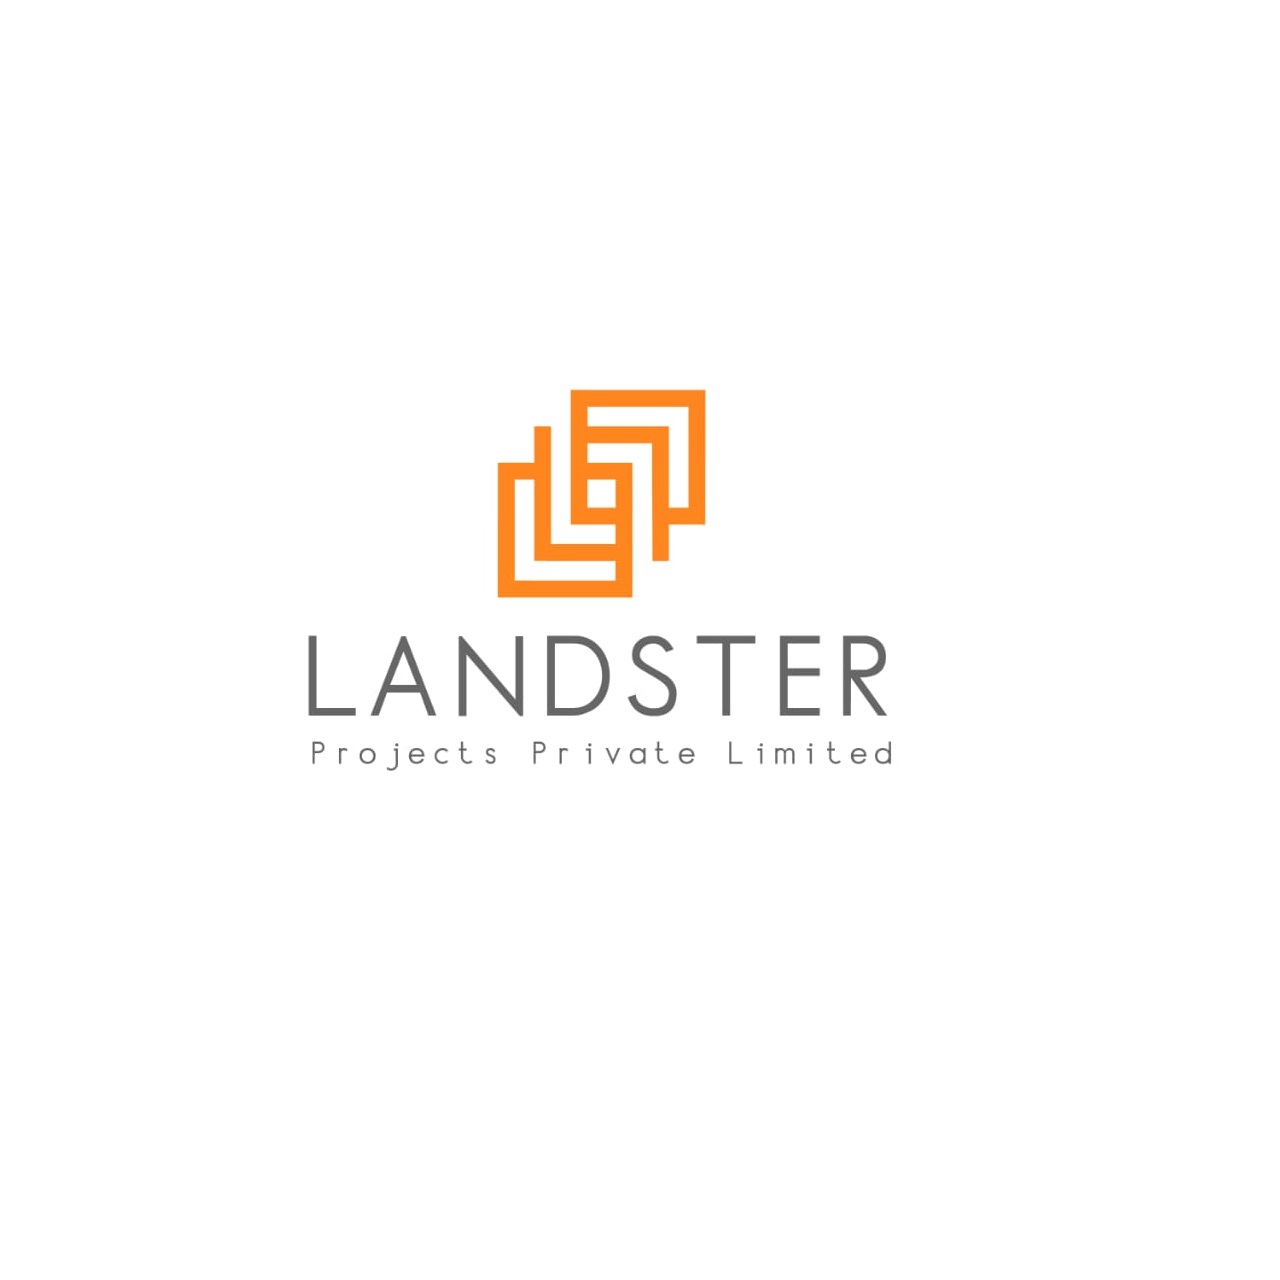 LANDSTER PROJECTS PVT LTD